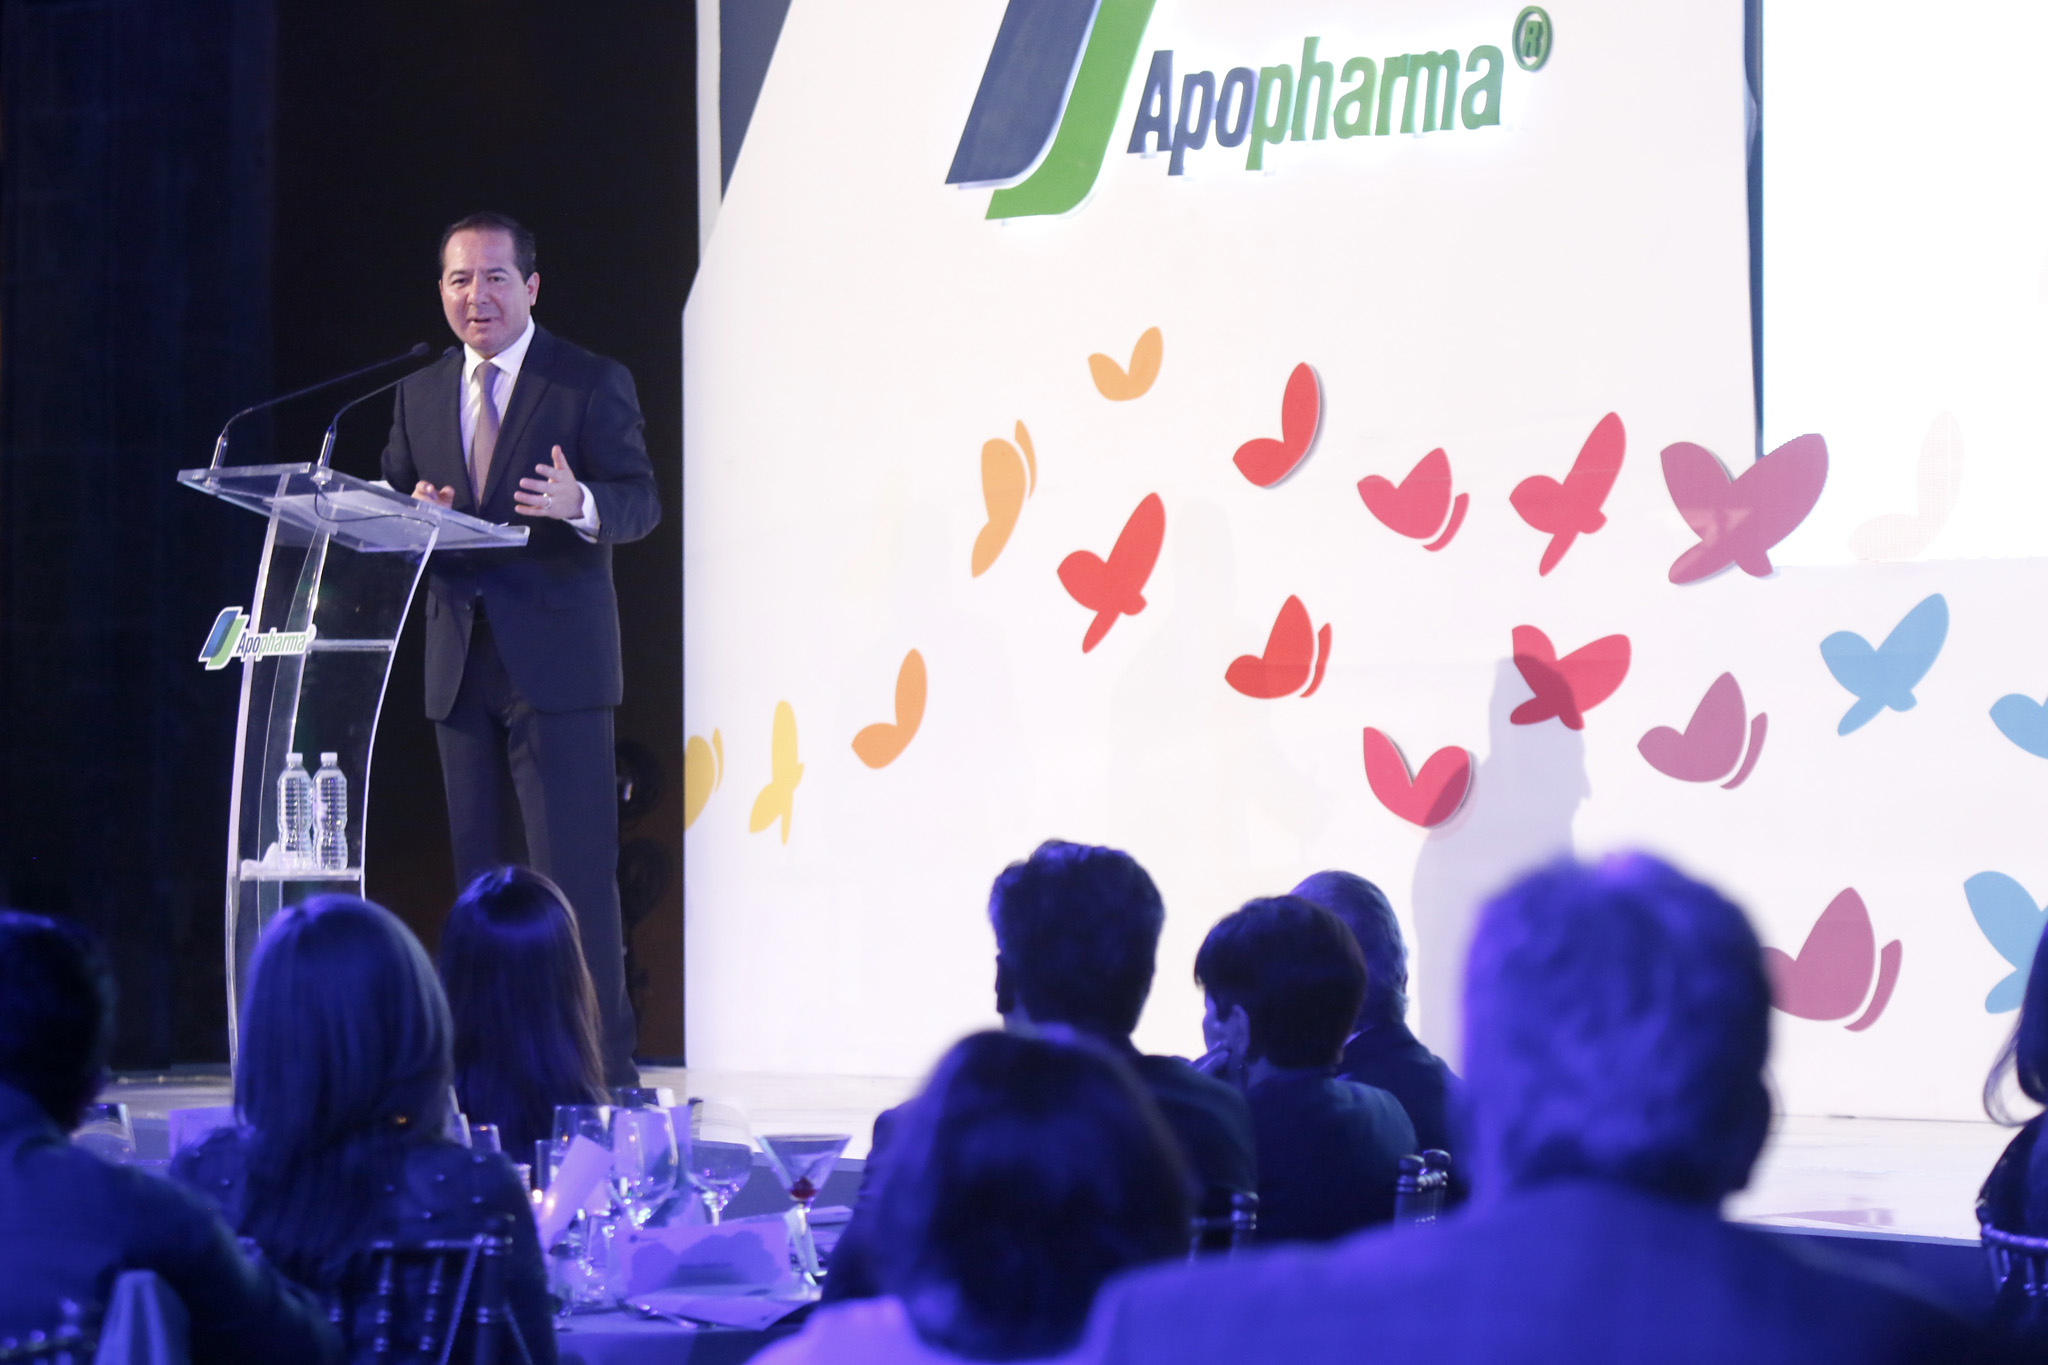 La COFEPRIS se reunió con representantes de Apotex y de la Asociación Mexicana de Genéricos (AMEGI). México cuenta con una política farmacéutica responsable que garantiza el acceso de la población a soluciones en salud.